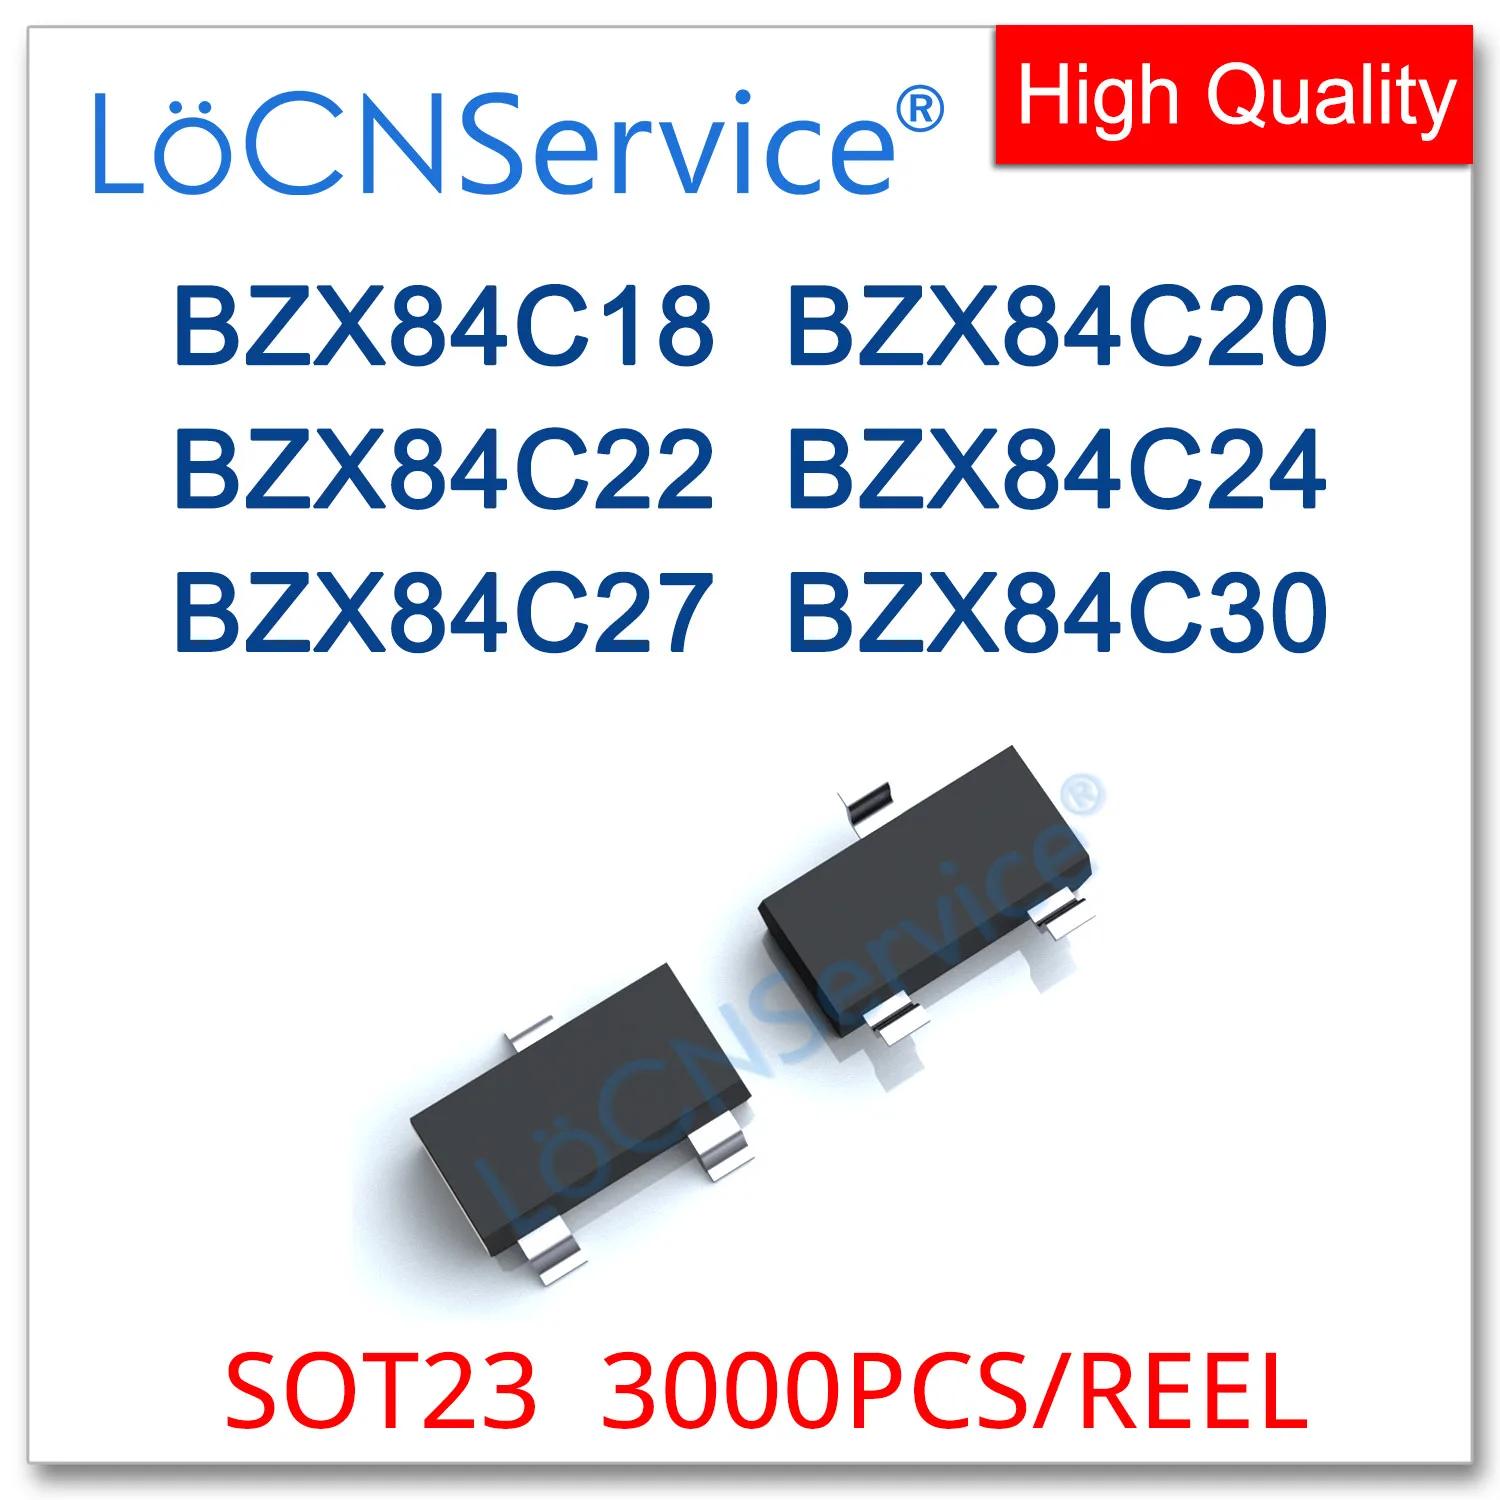 LoCNService 3000PCs, SOT23, 0.35W, BZX84C18, 18V, BZX84C20, 20V, BZX84C22, 22V, BZX84C24, 24V, BZX84C27, 27V, BZX84C